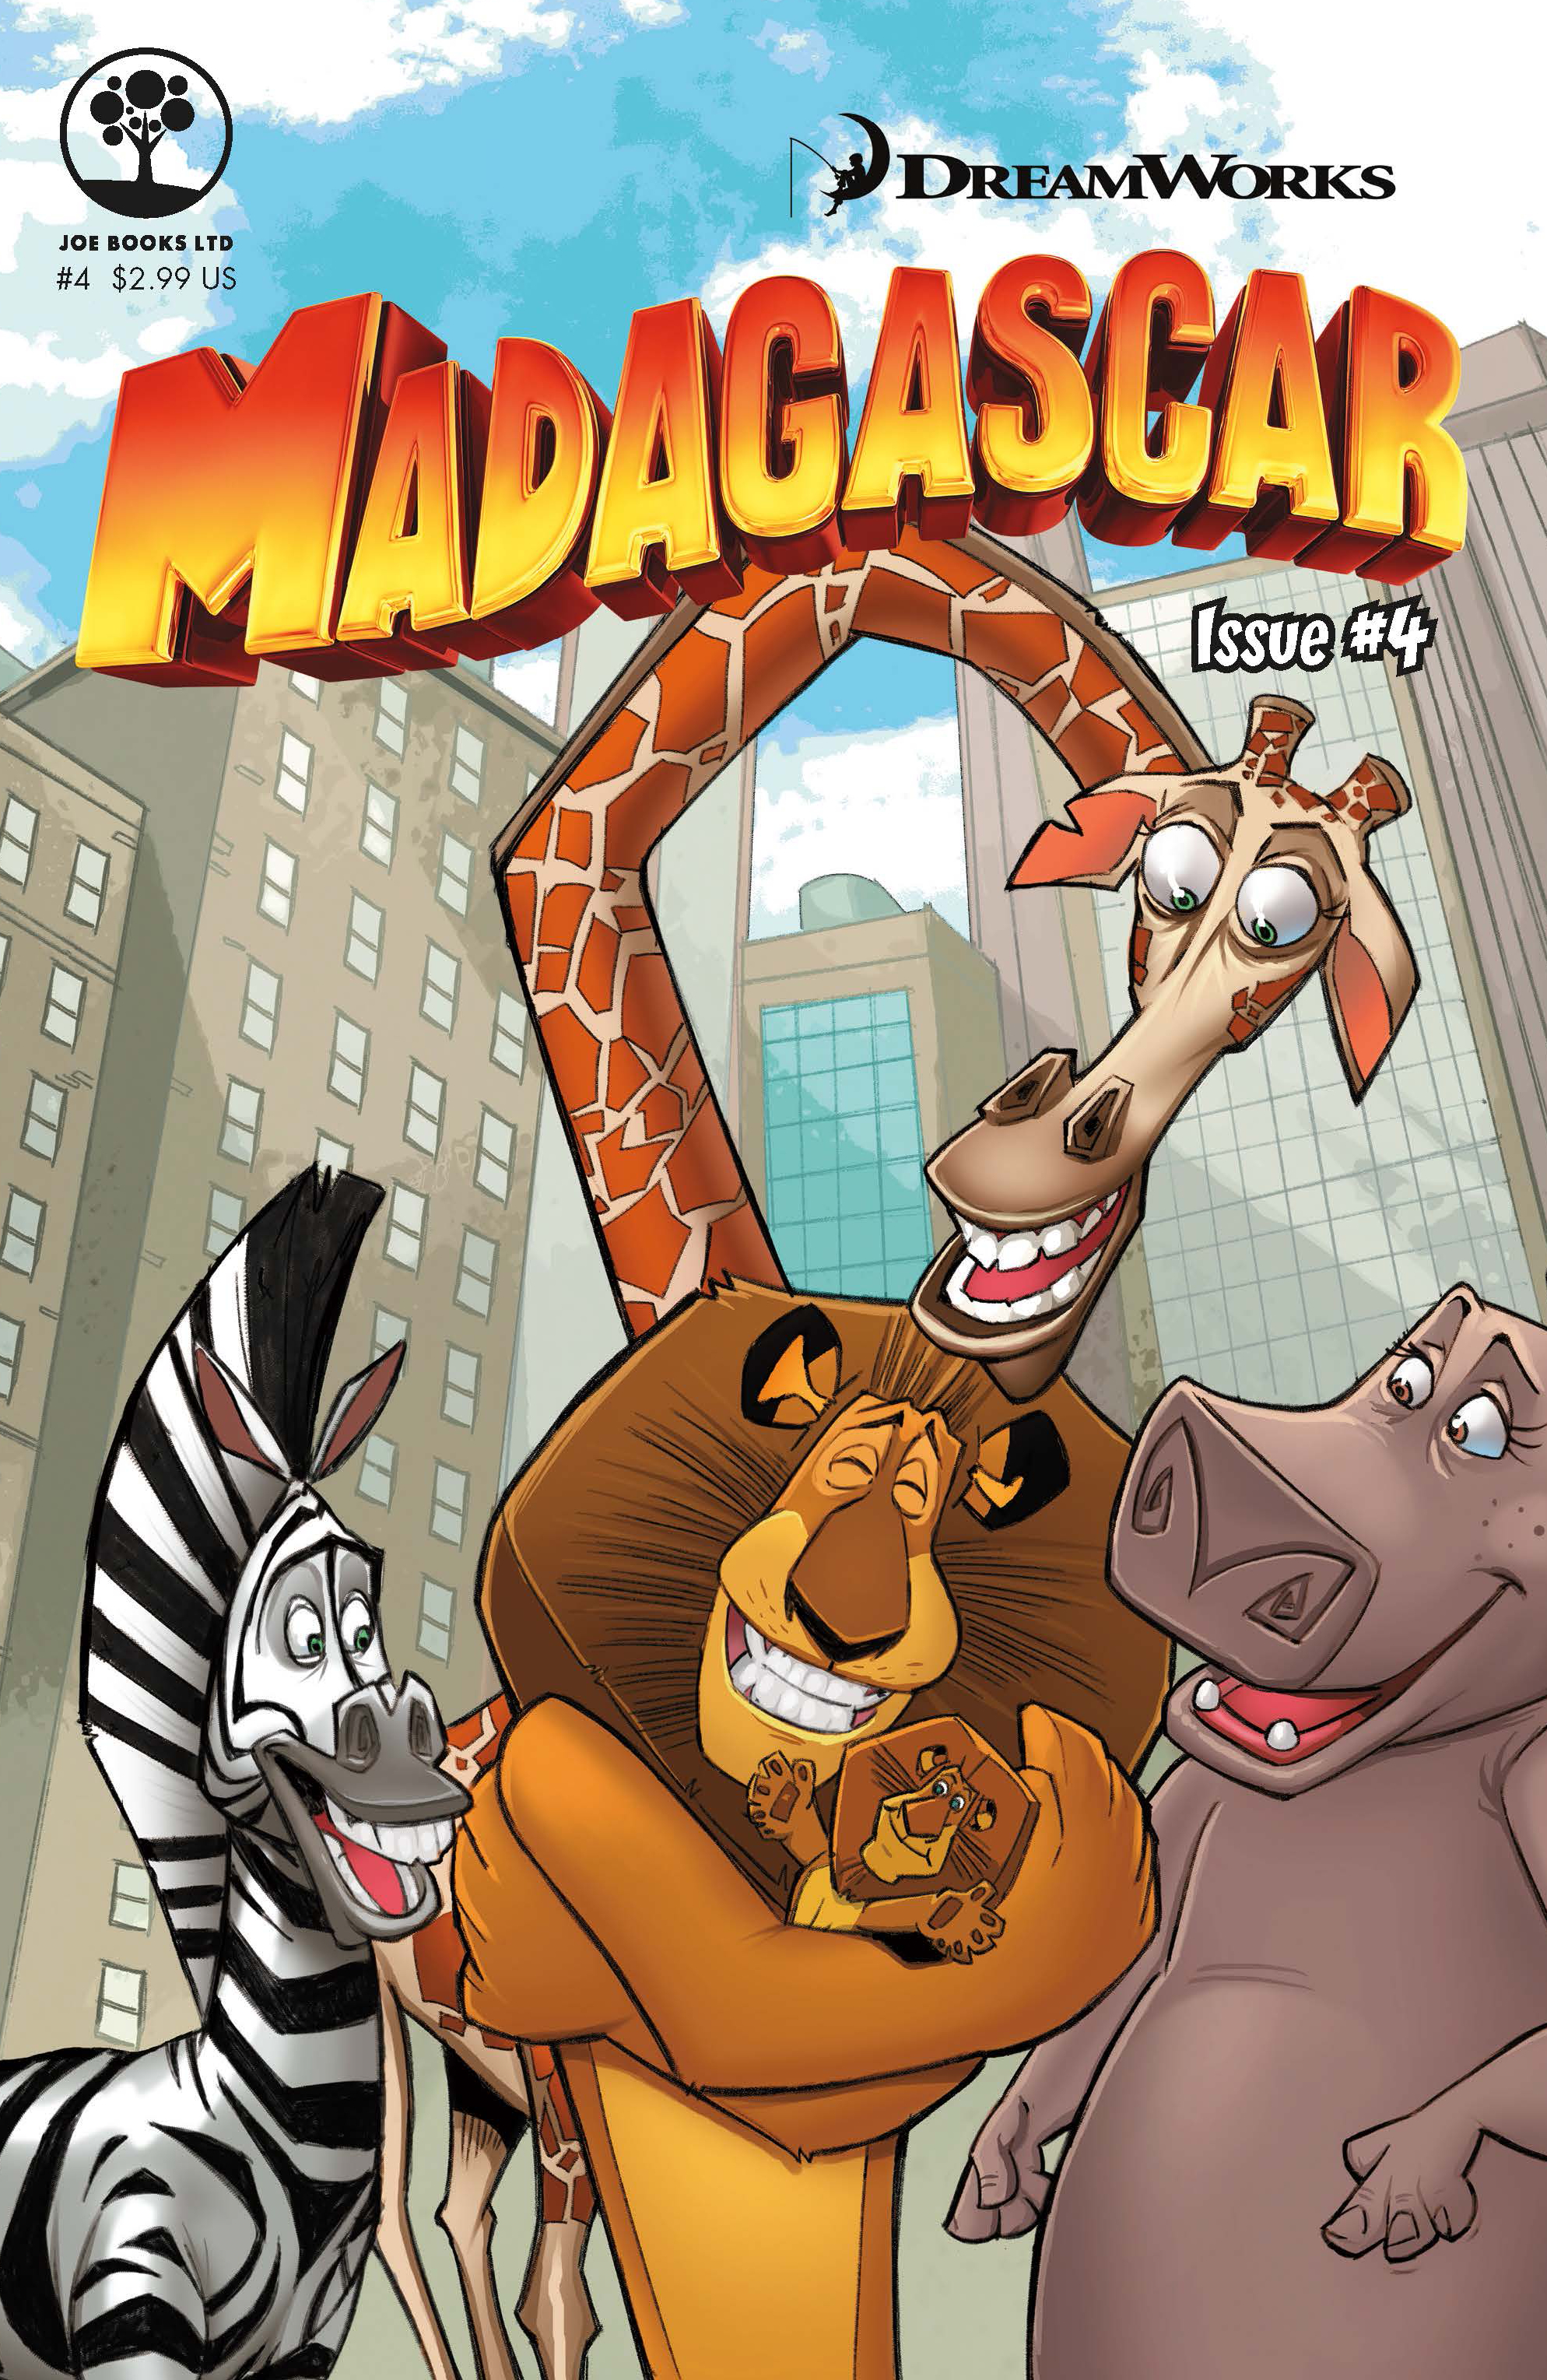 APR161718 - DREAMWORKS MADAGASCAR #4 - Previews World